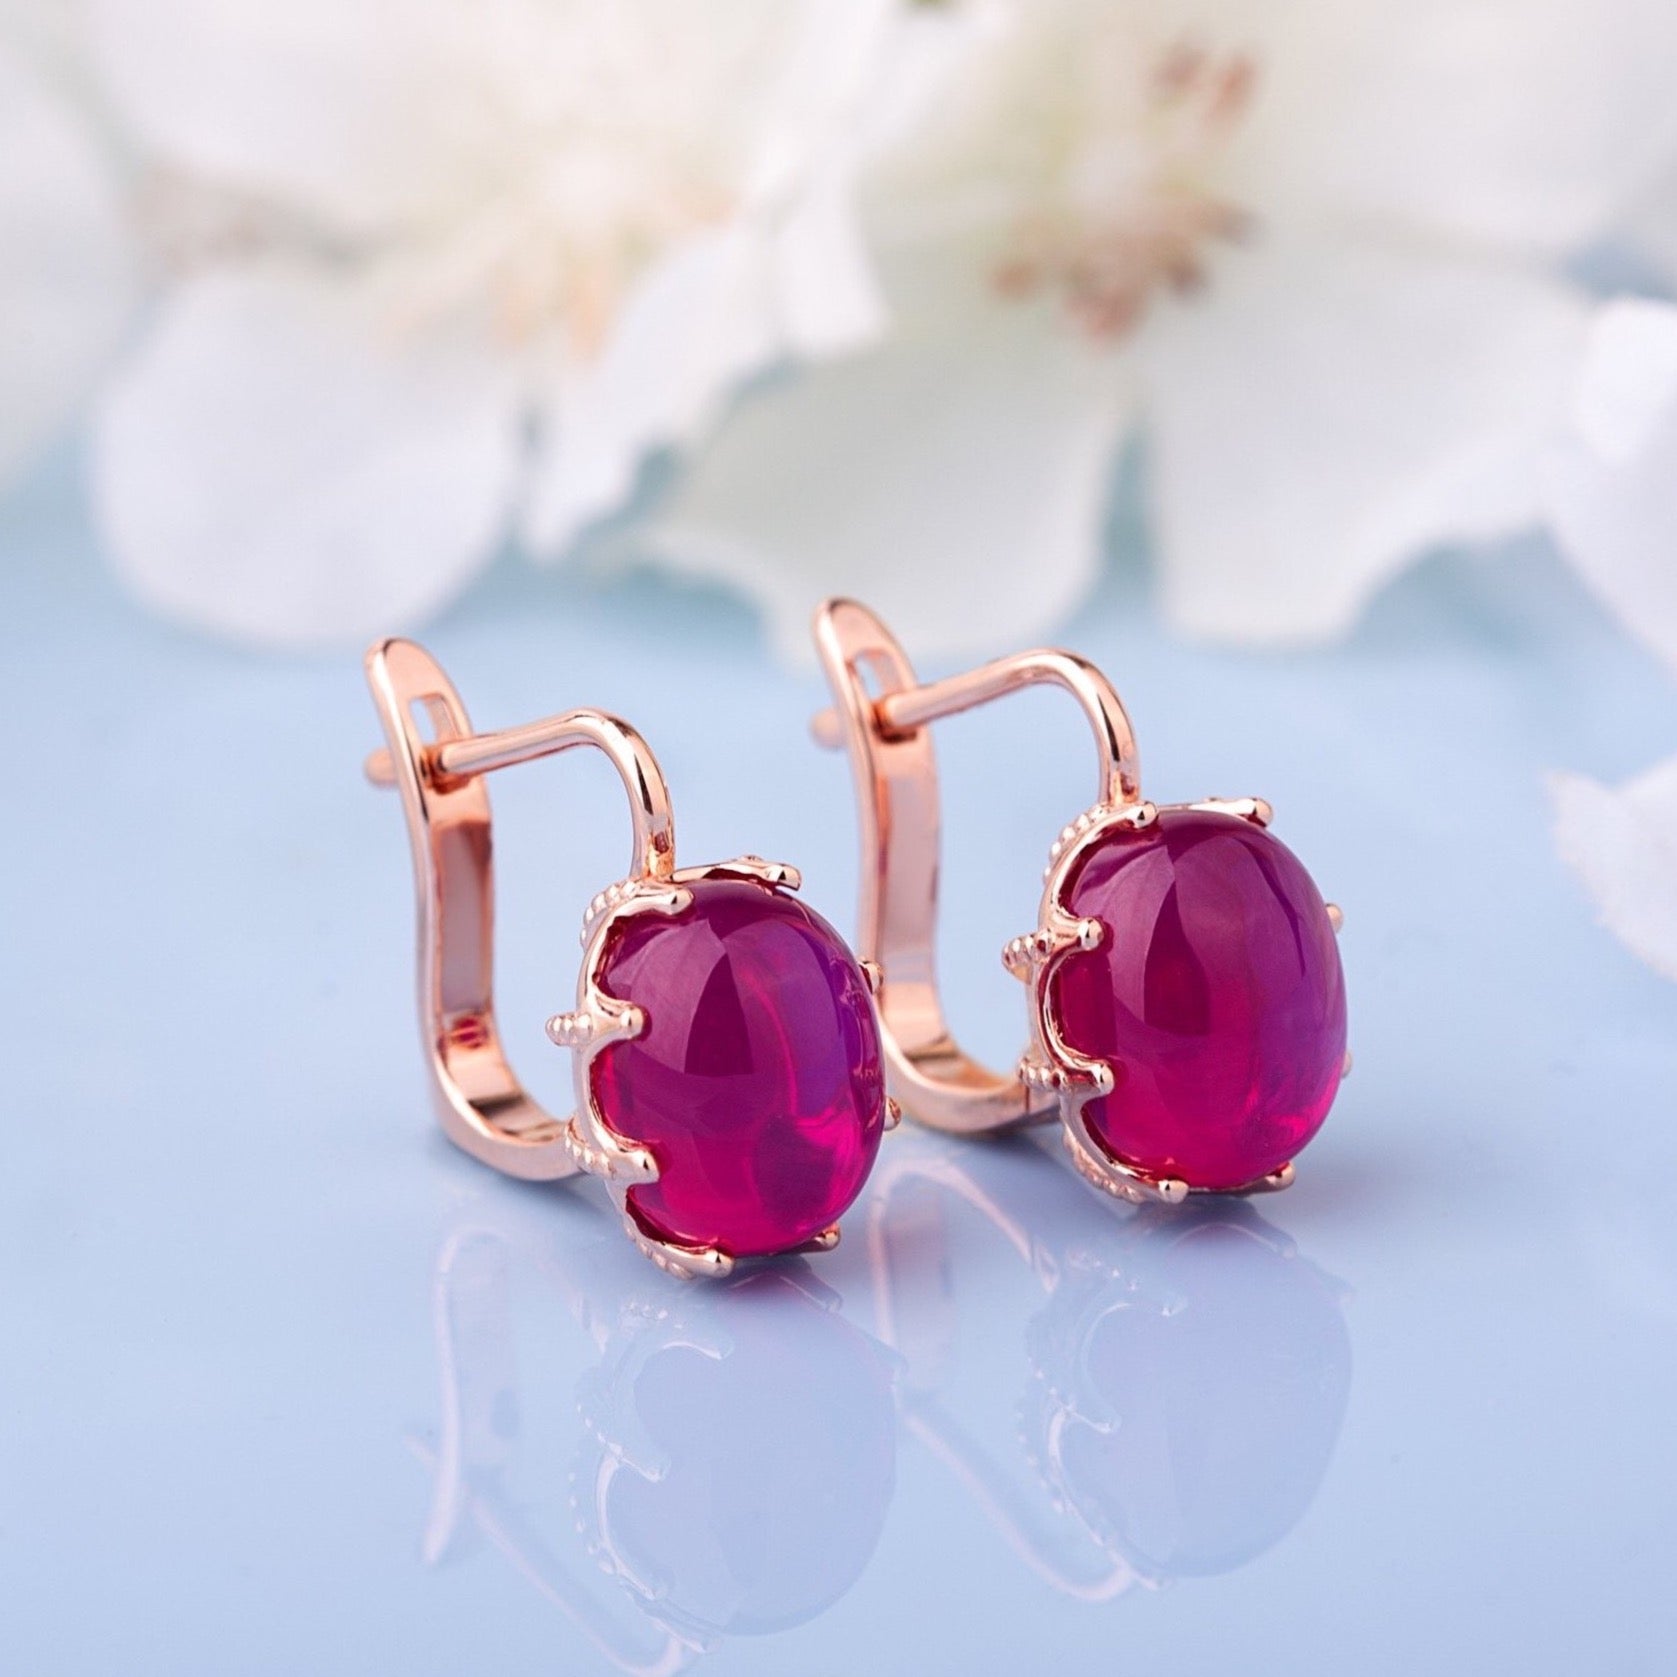 Two Red Ruby vintage earrings